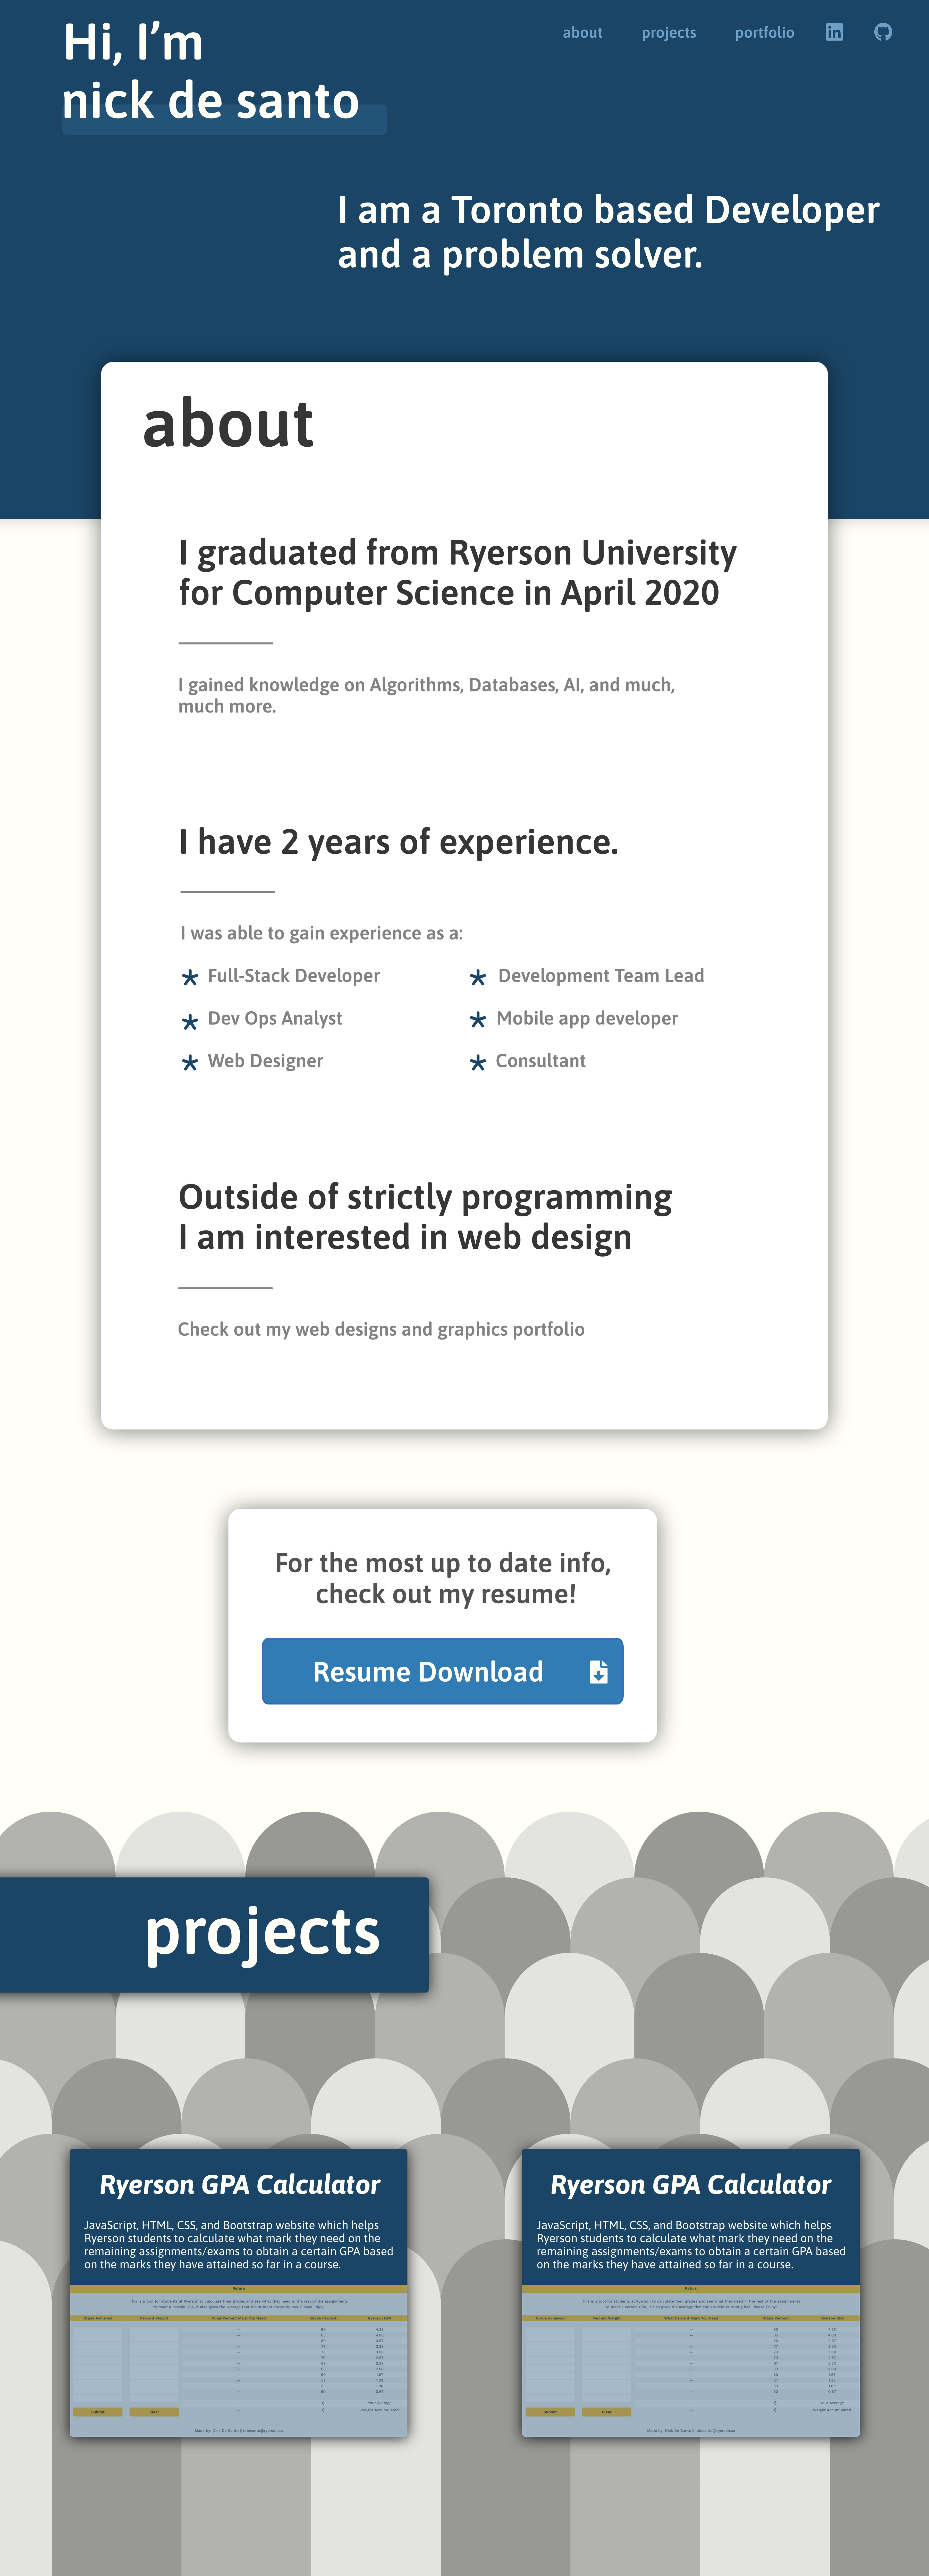 desanto.ca web design concept